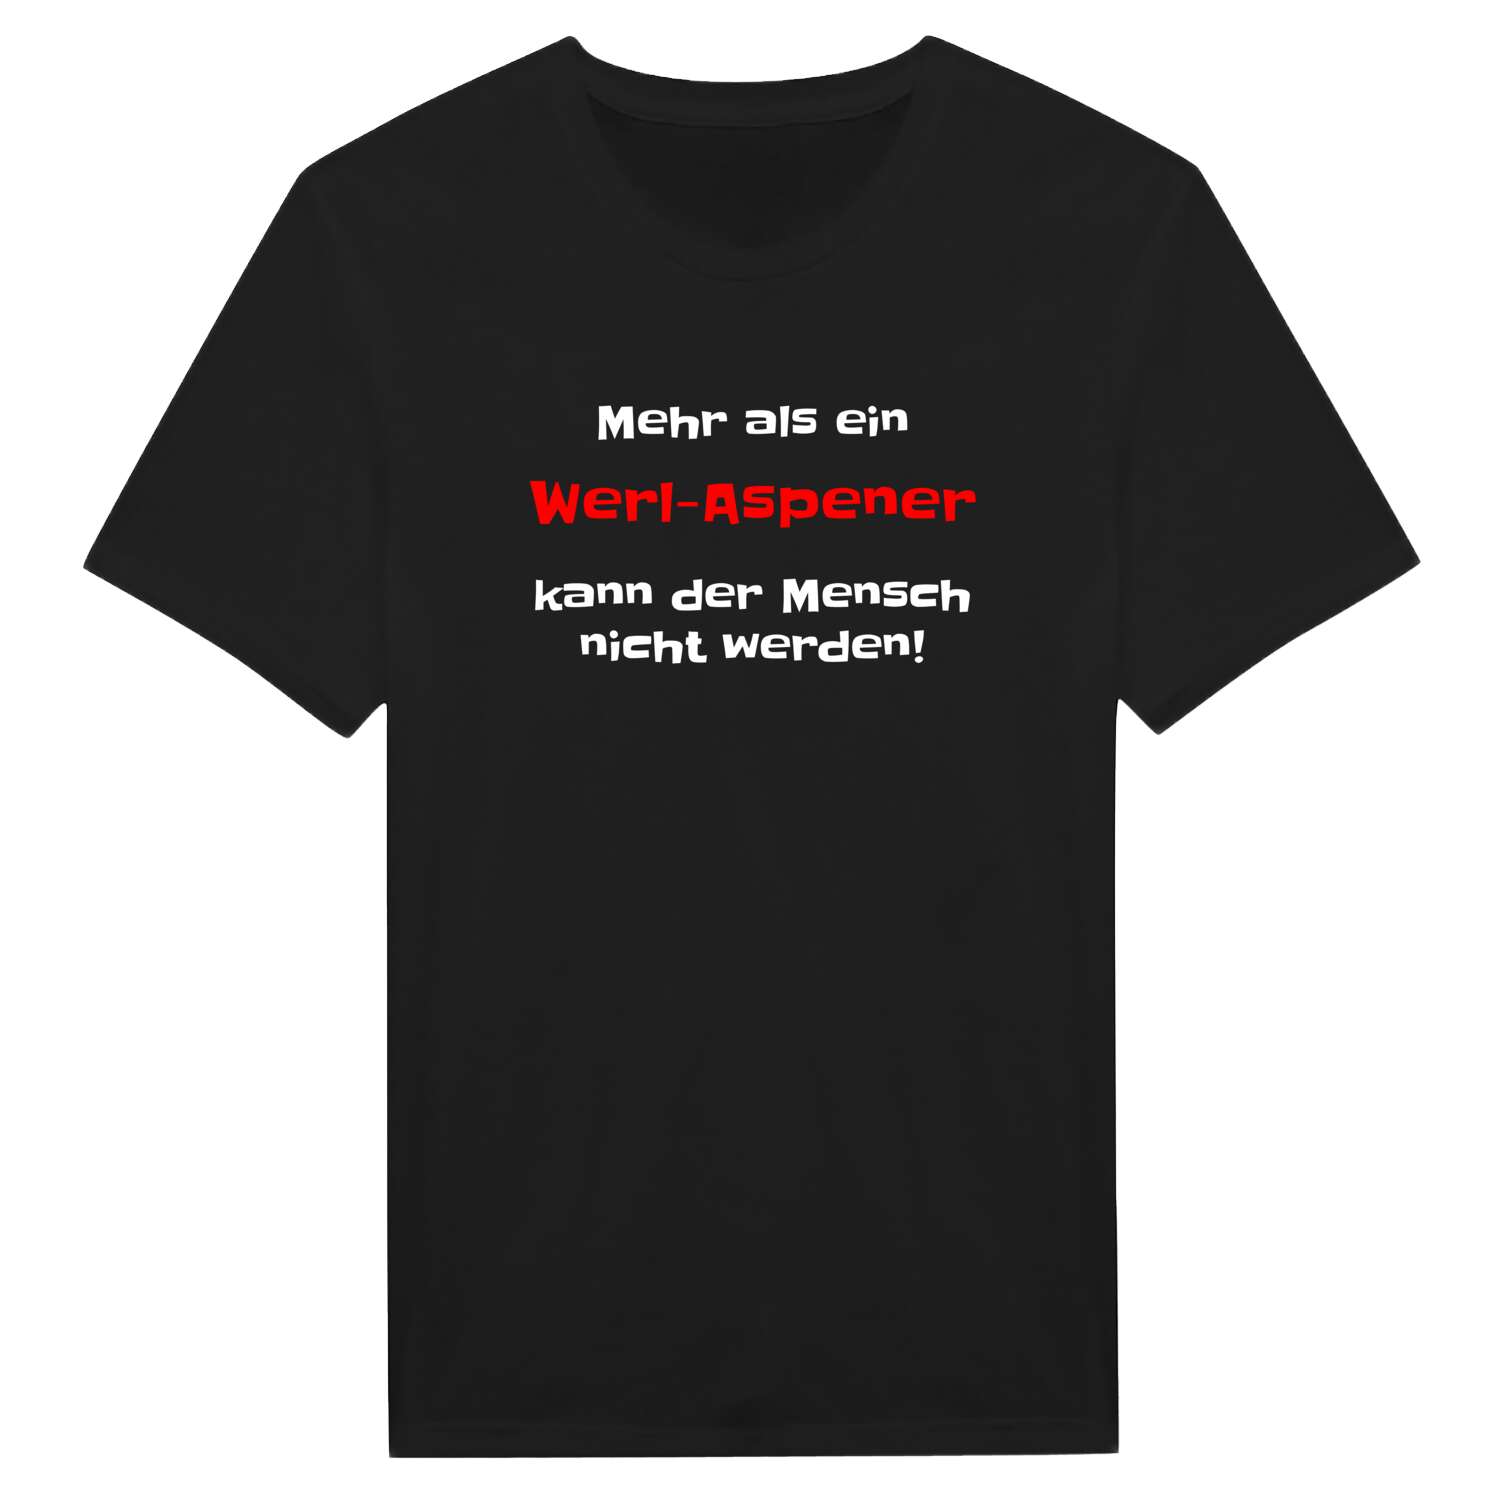 Werl-Aspe T-Shirt »Mehr als ein«